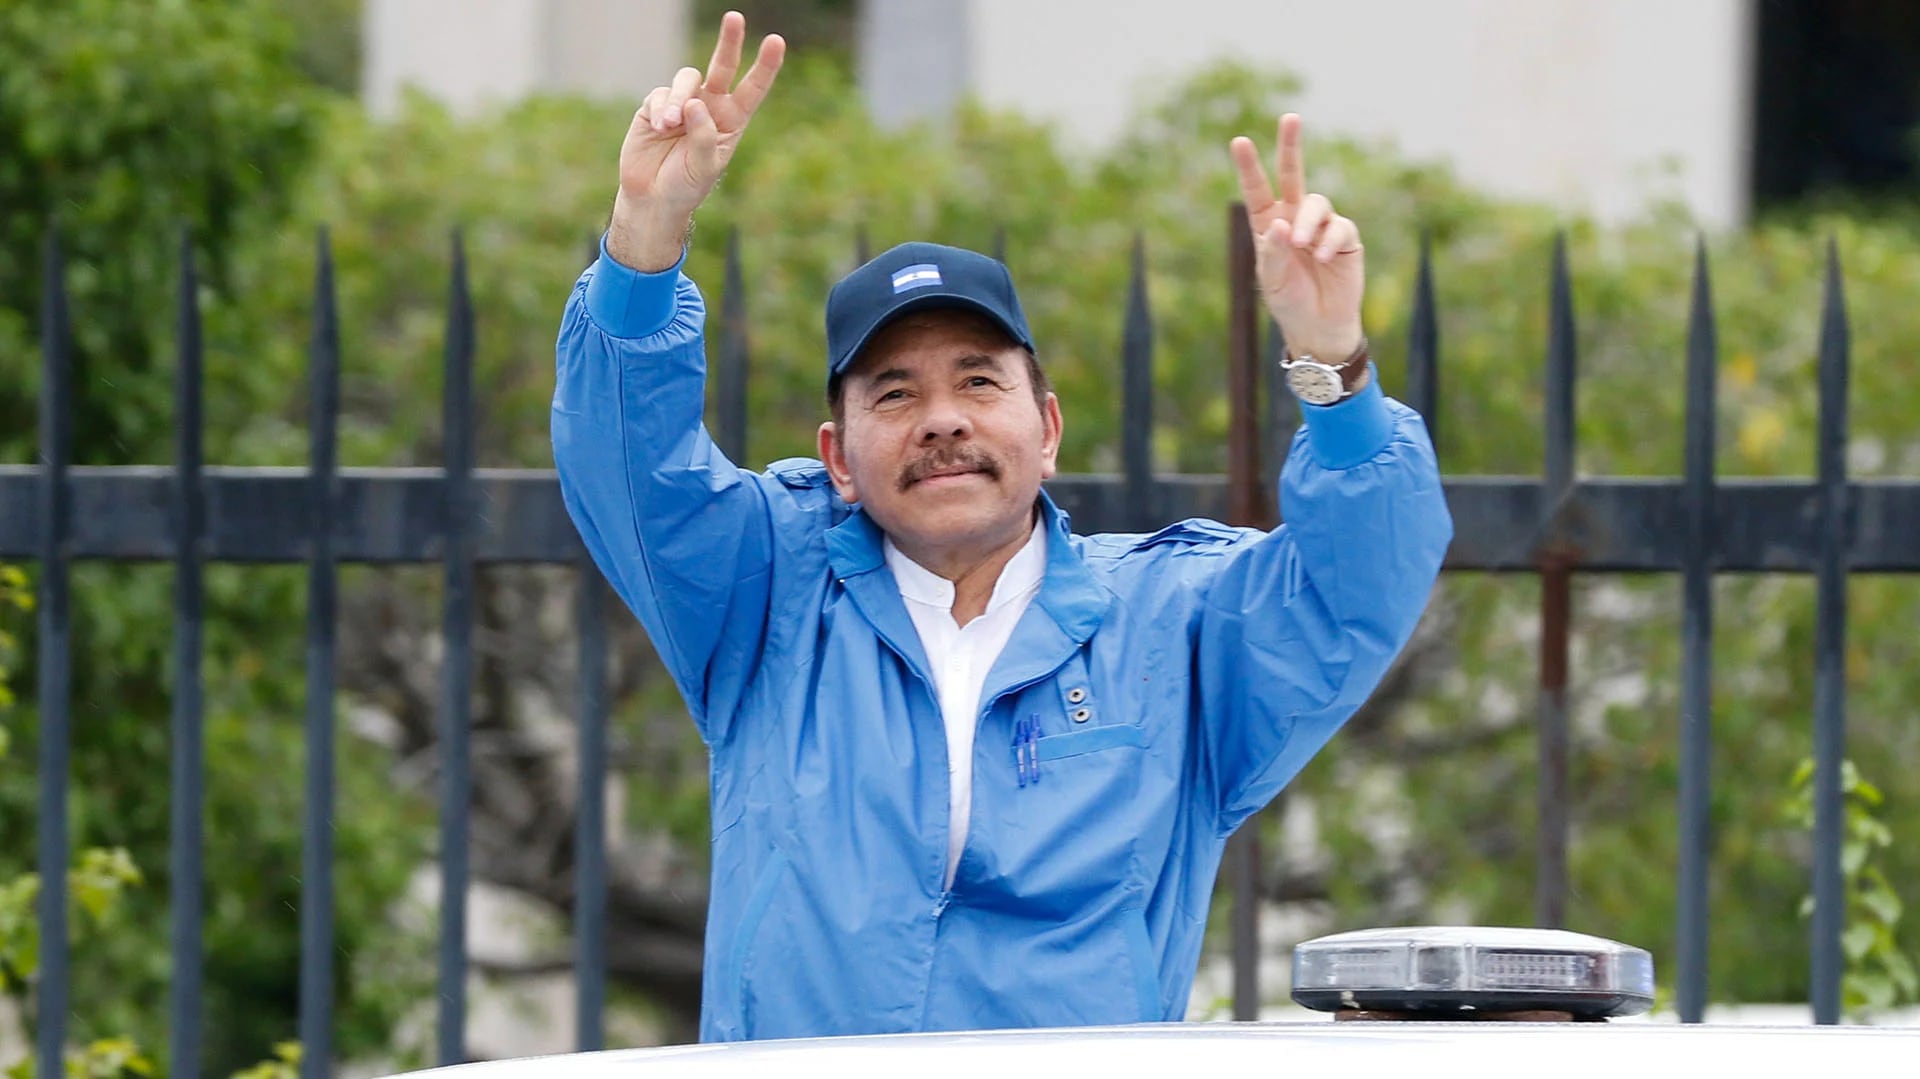 El presidente Daniel Ortega se encuentra en su cuarto mandato tras haber logrado inahbilitar a varios de sus opositores (Reuters)